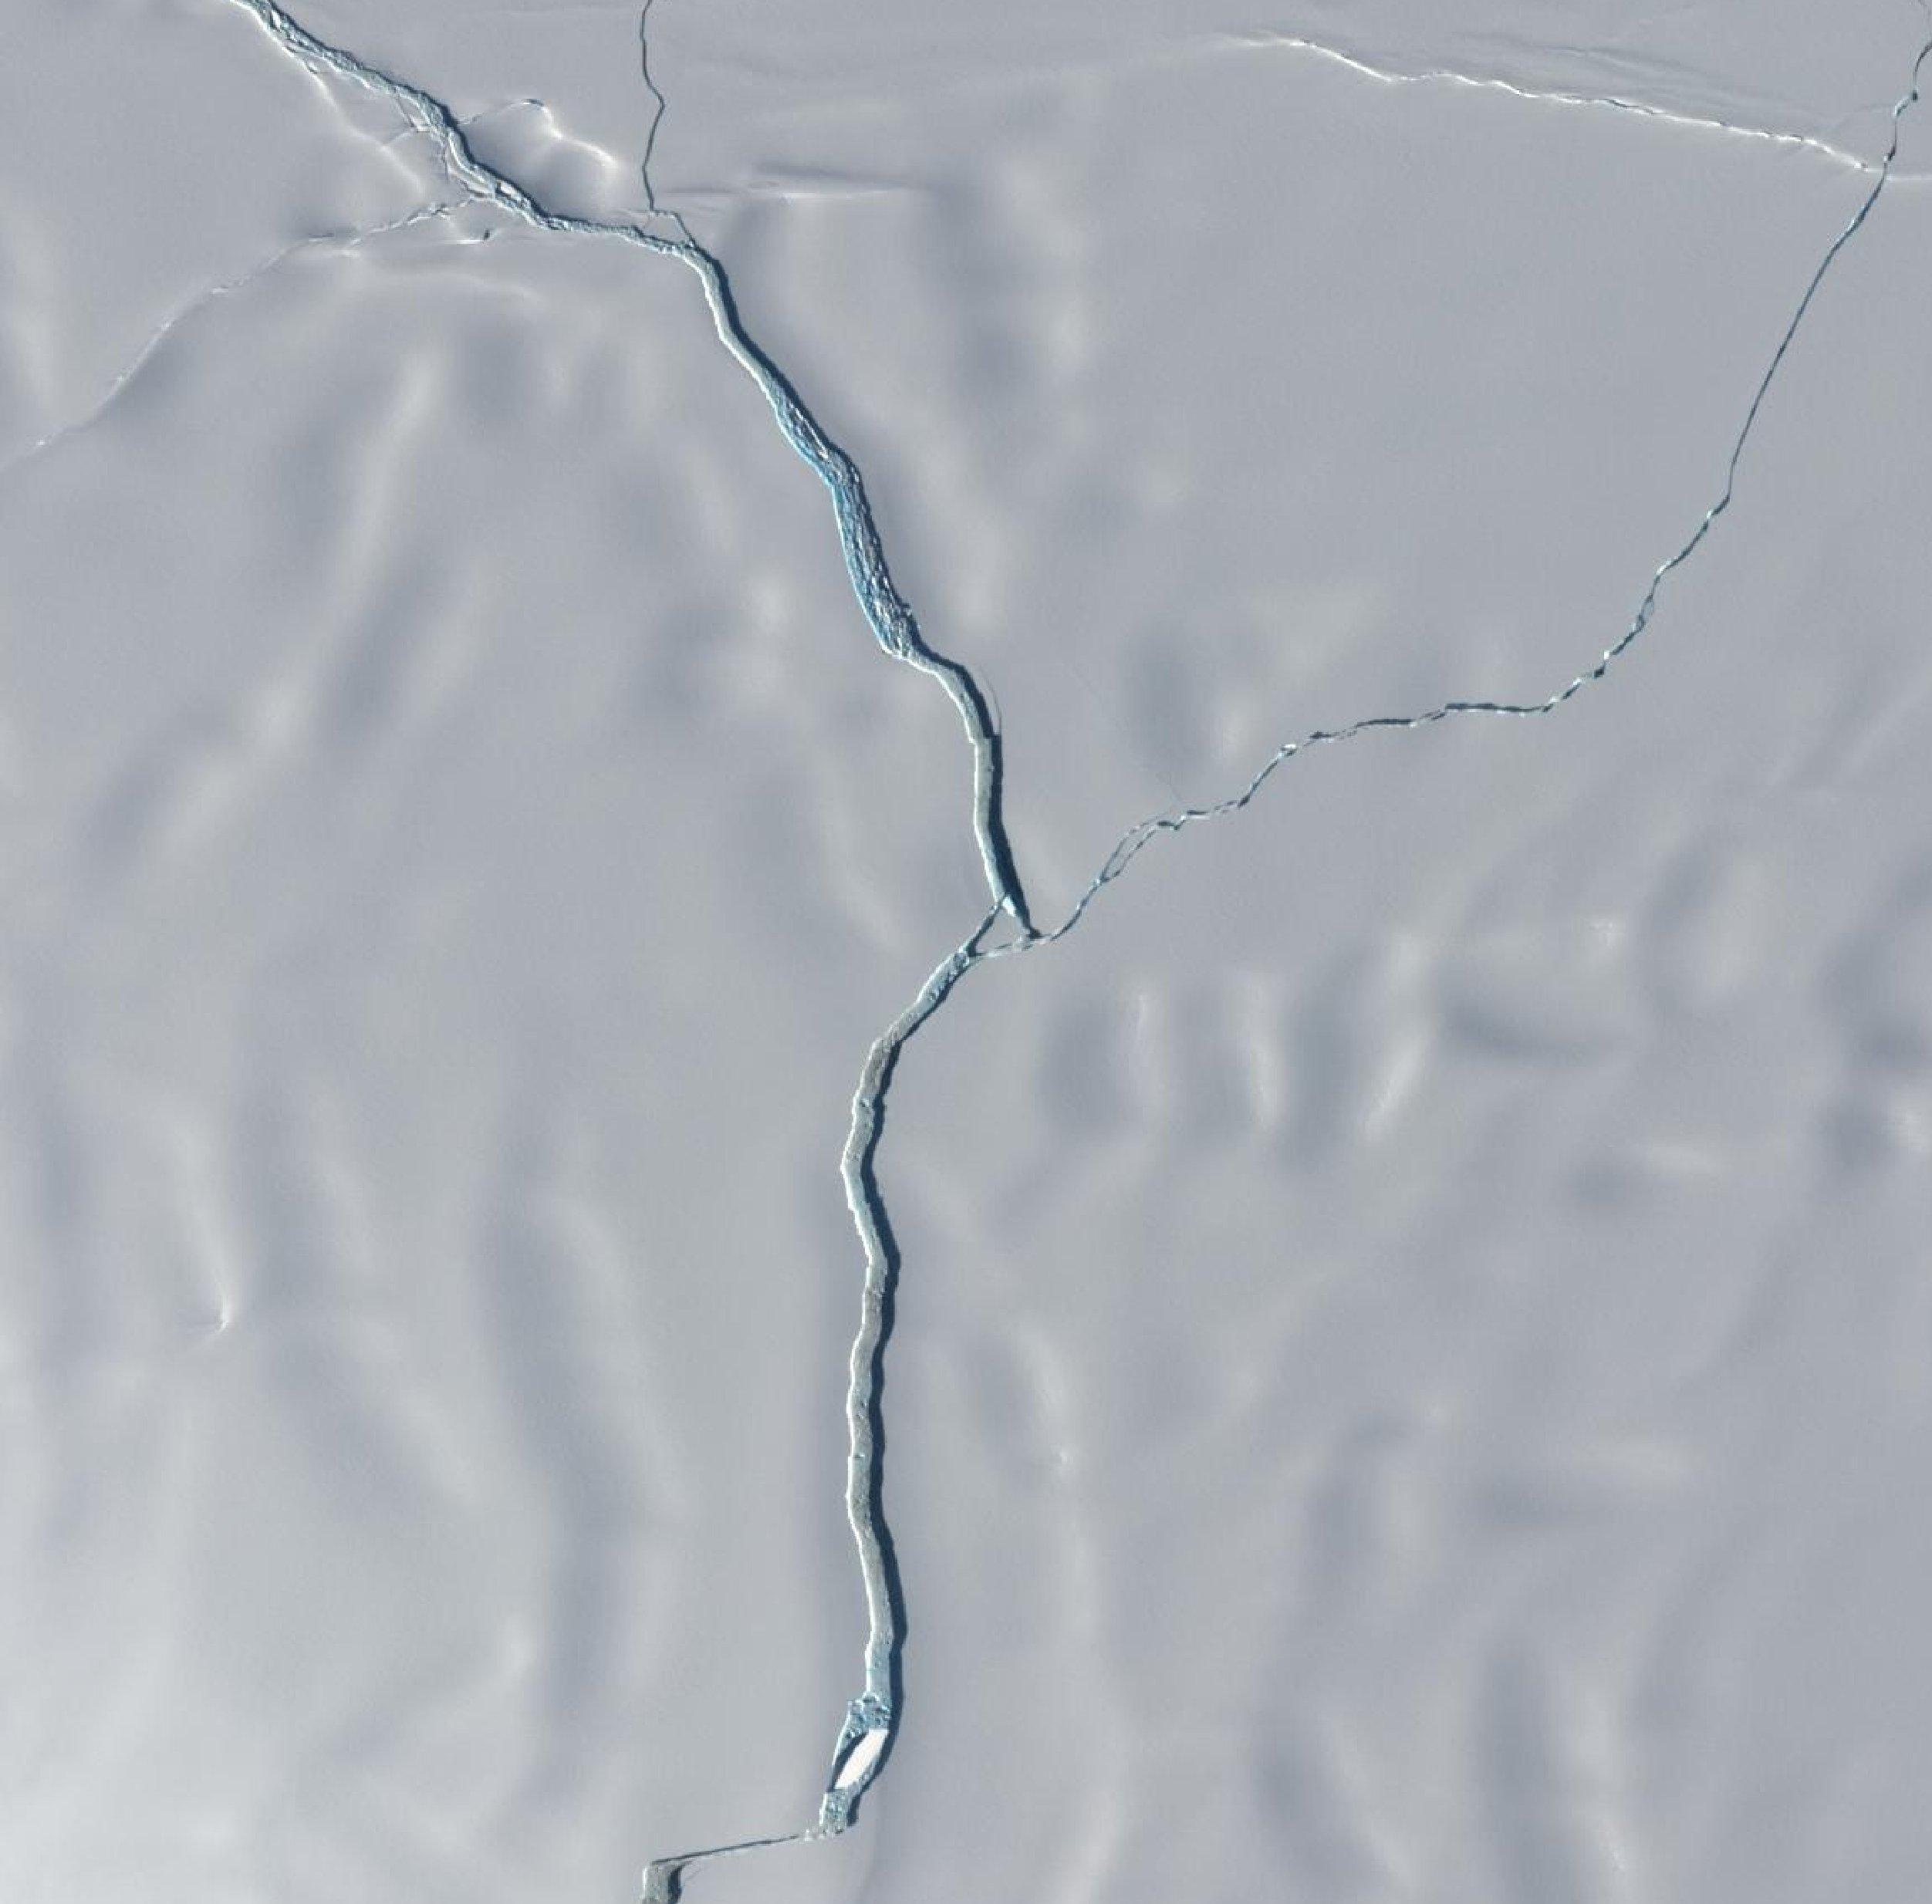 Antarktika’dan büyük bir buzul çatlayarak kopma noktasına geldi